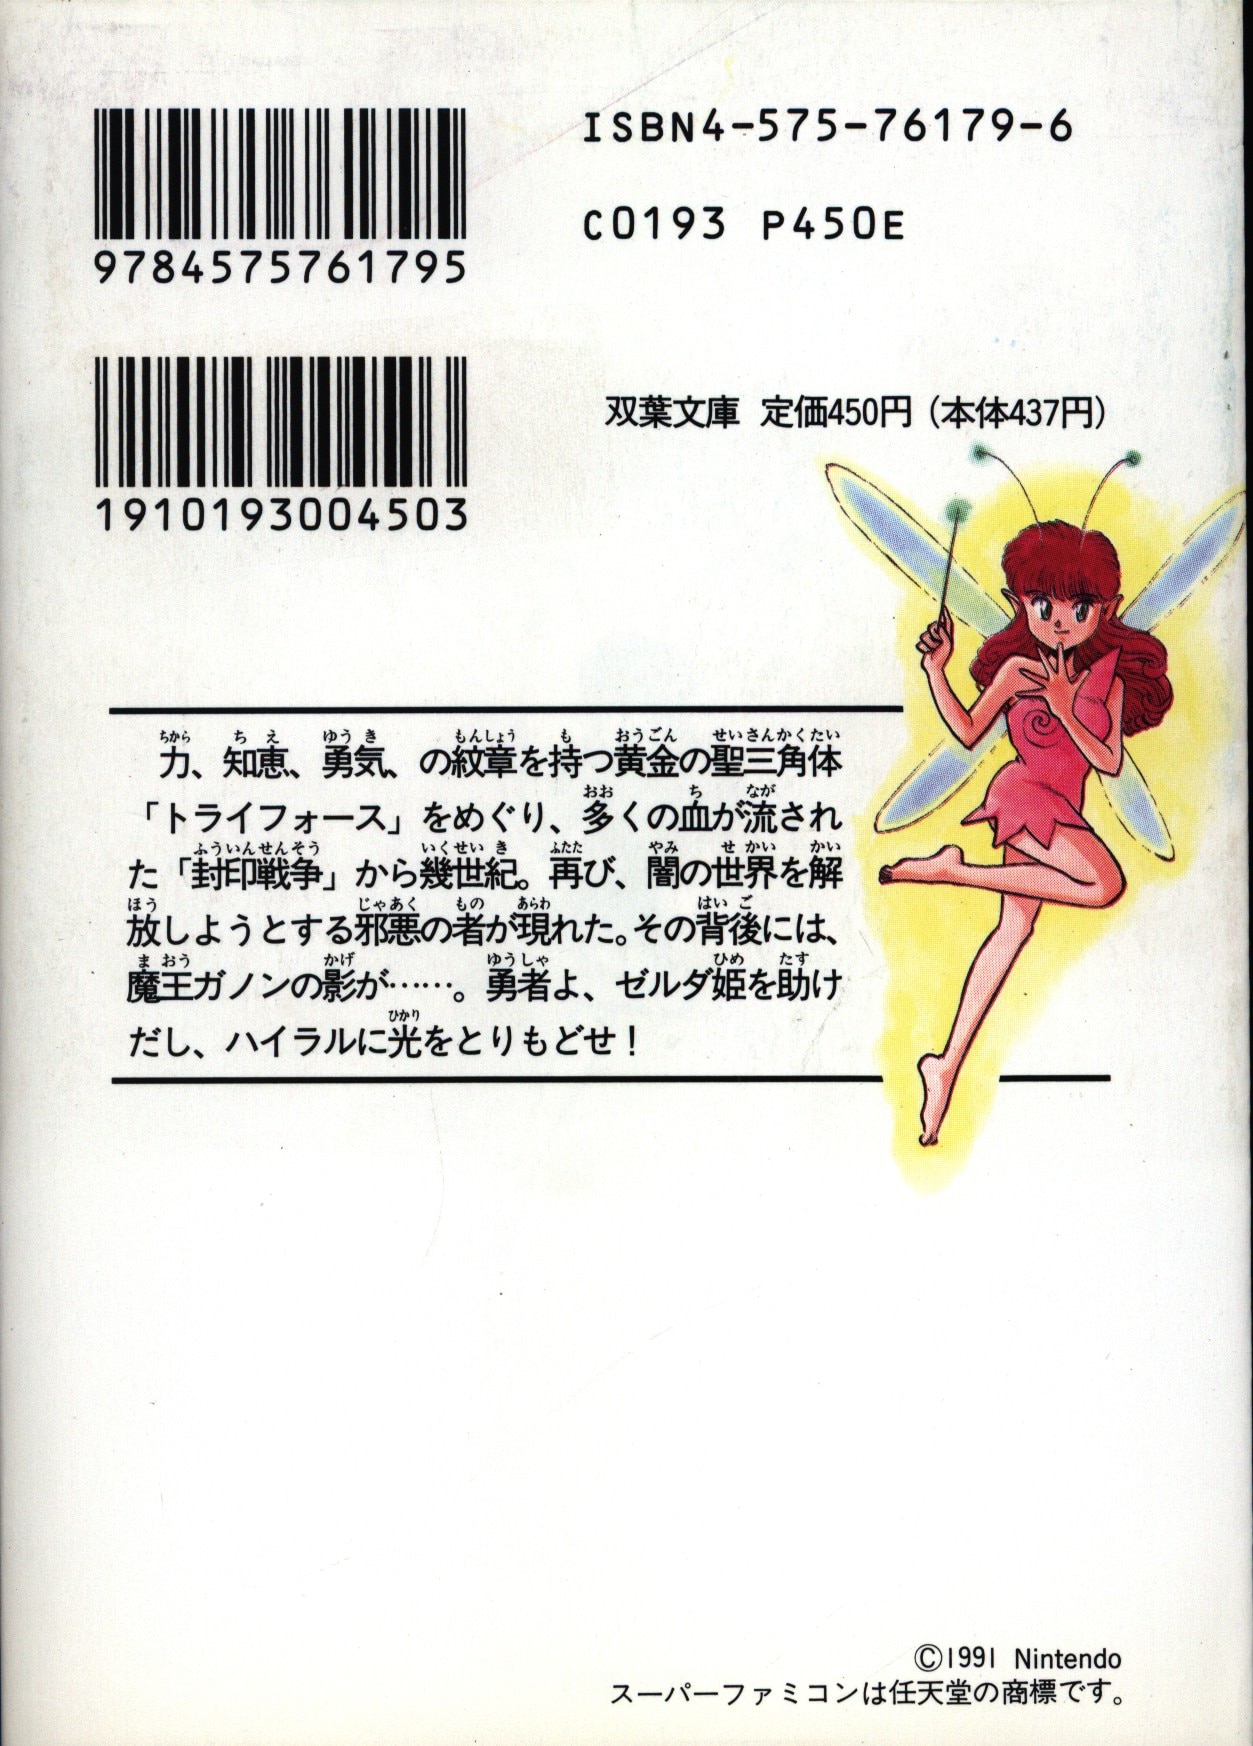 双葉社 スーパーファミコン冒険ゲームブック 富沢義彦 ゼルダの伝説 神々のトライフォース まんだらけ Mandarake